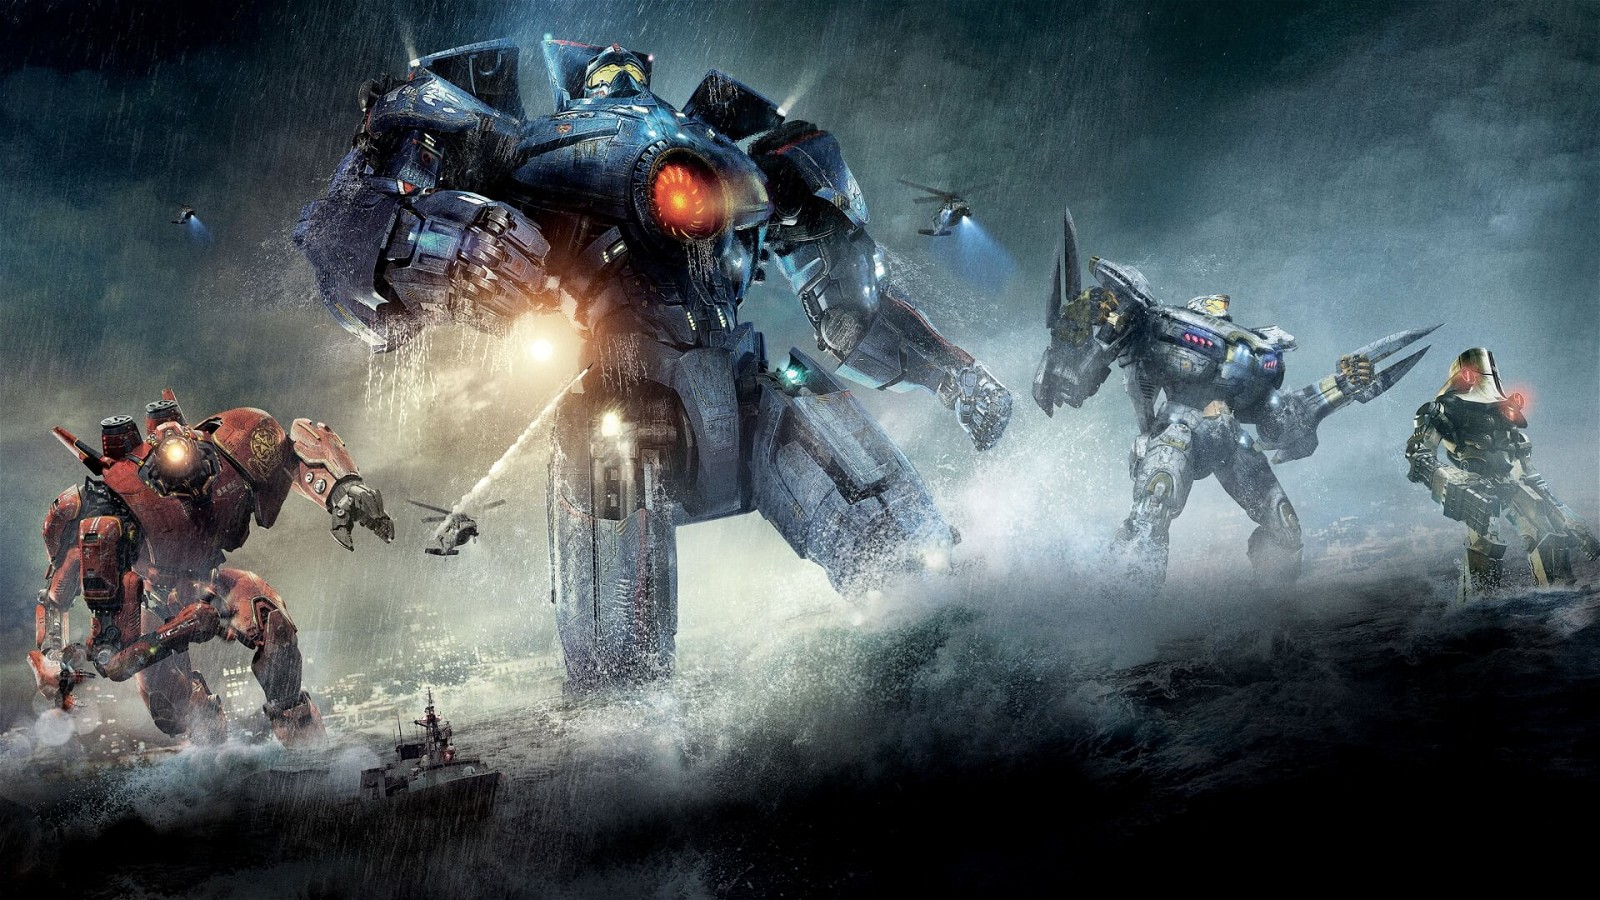 Guillermo Del Toro's Pacific Rim laid the foundation for a potential Gundam movie